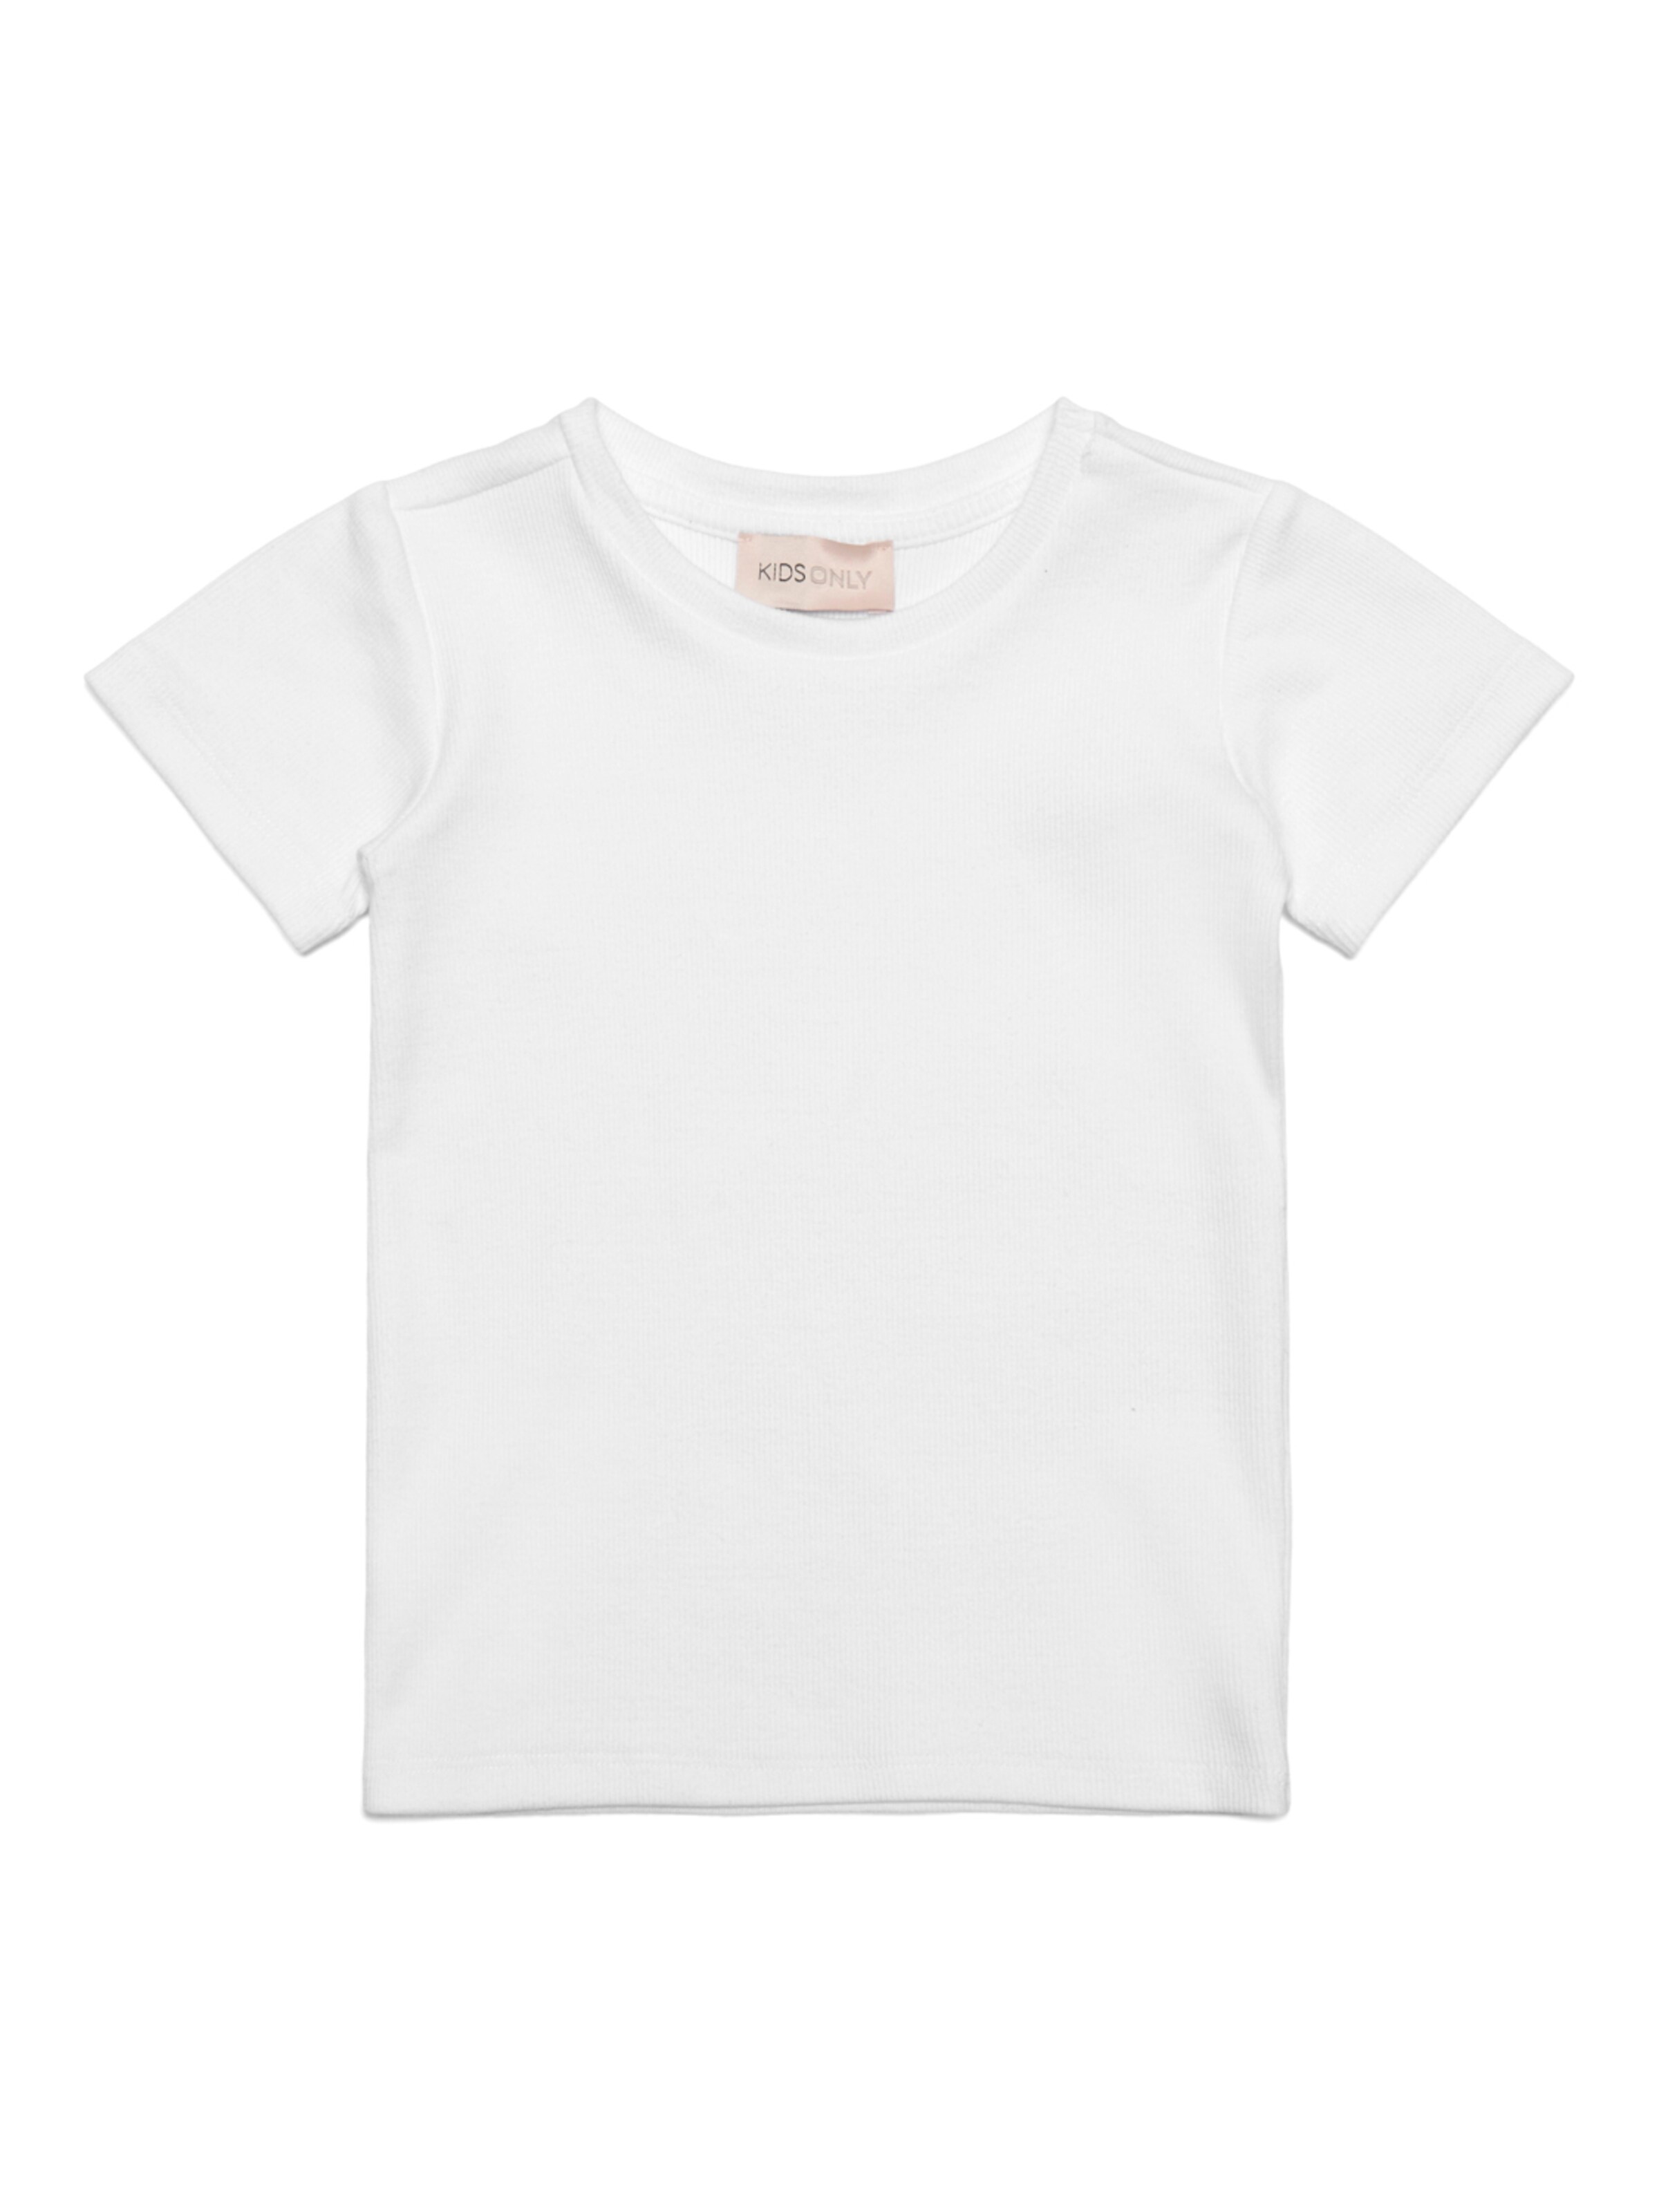 Kids Only T-Shirt 80 Blanc